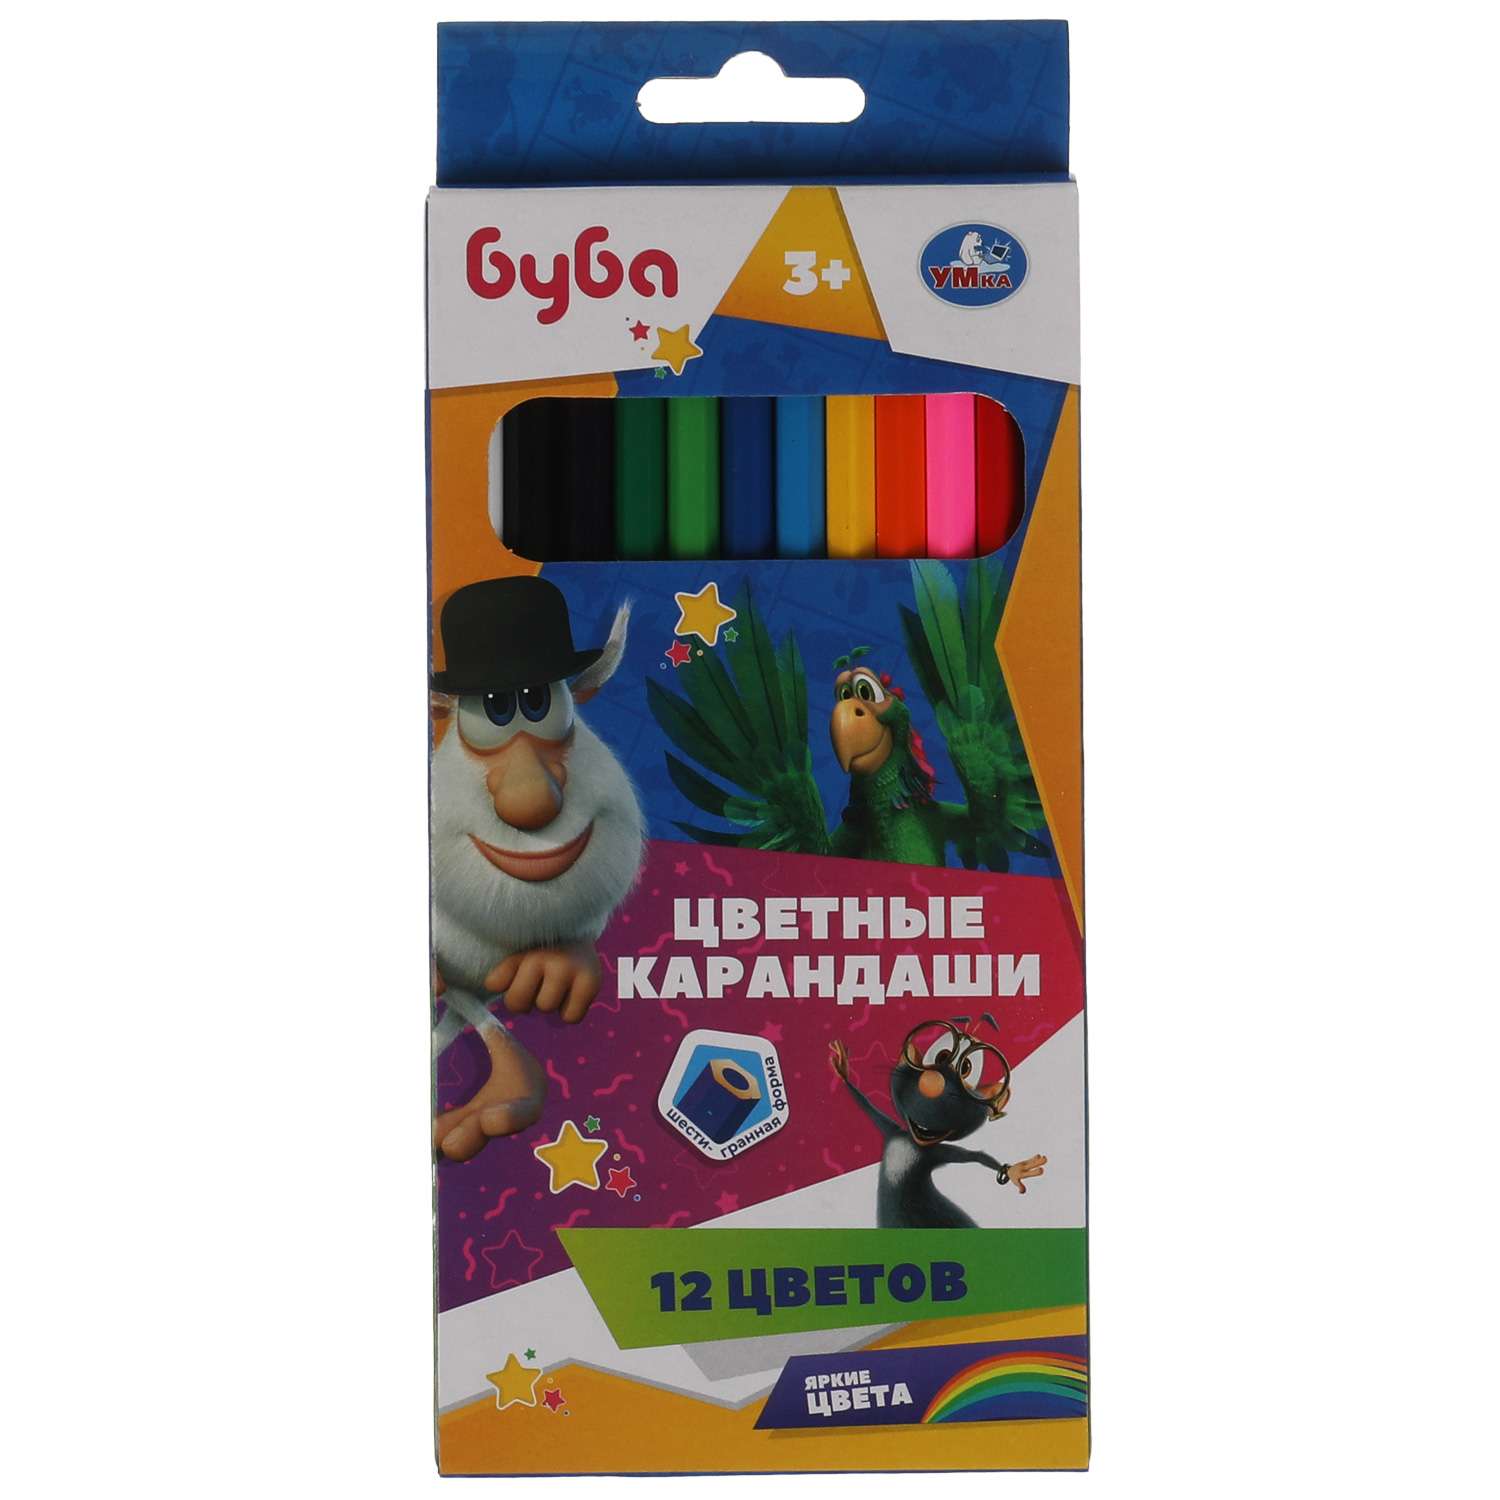 Цветные карандаши Умка Буба 12цветов шестигранные 321054 - фото 1